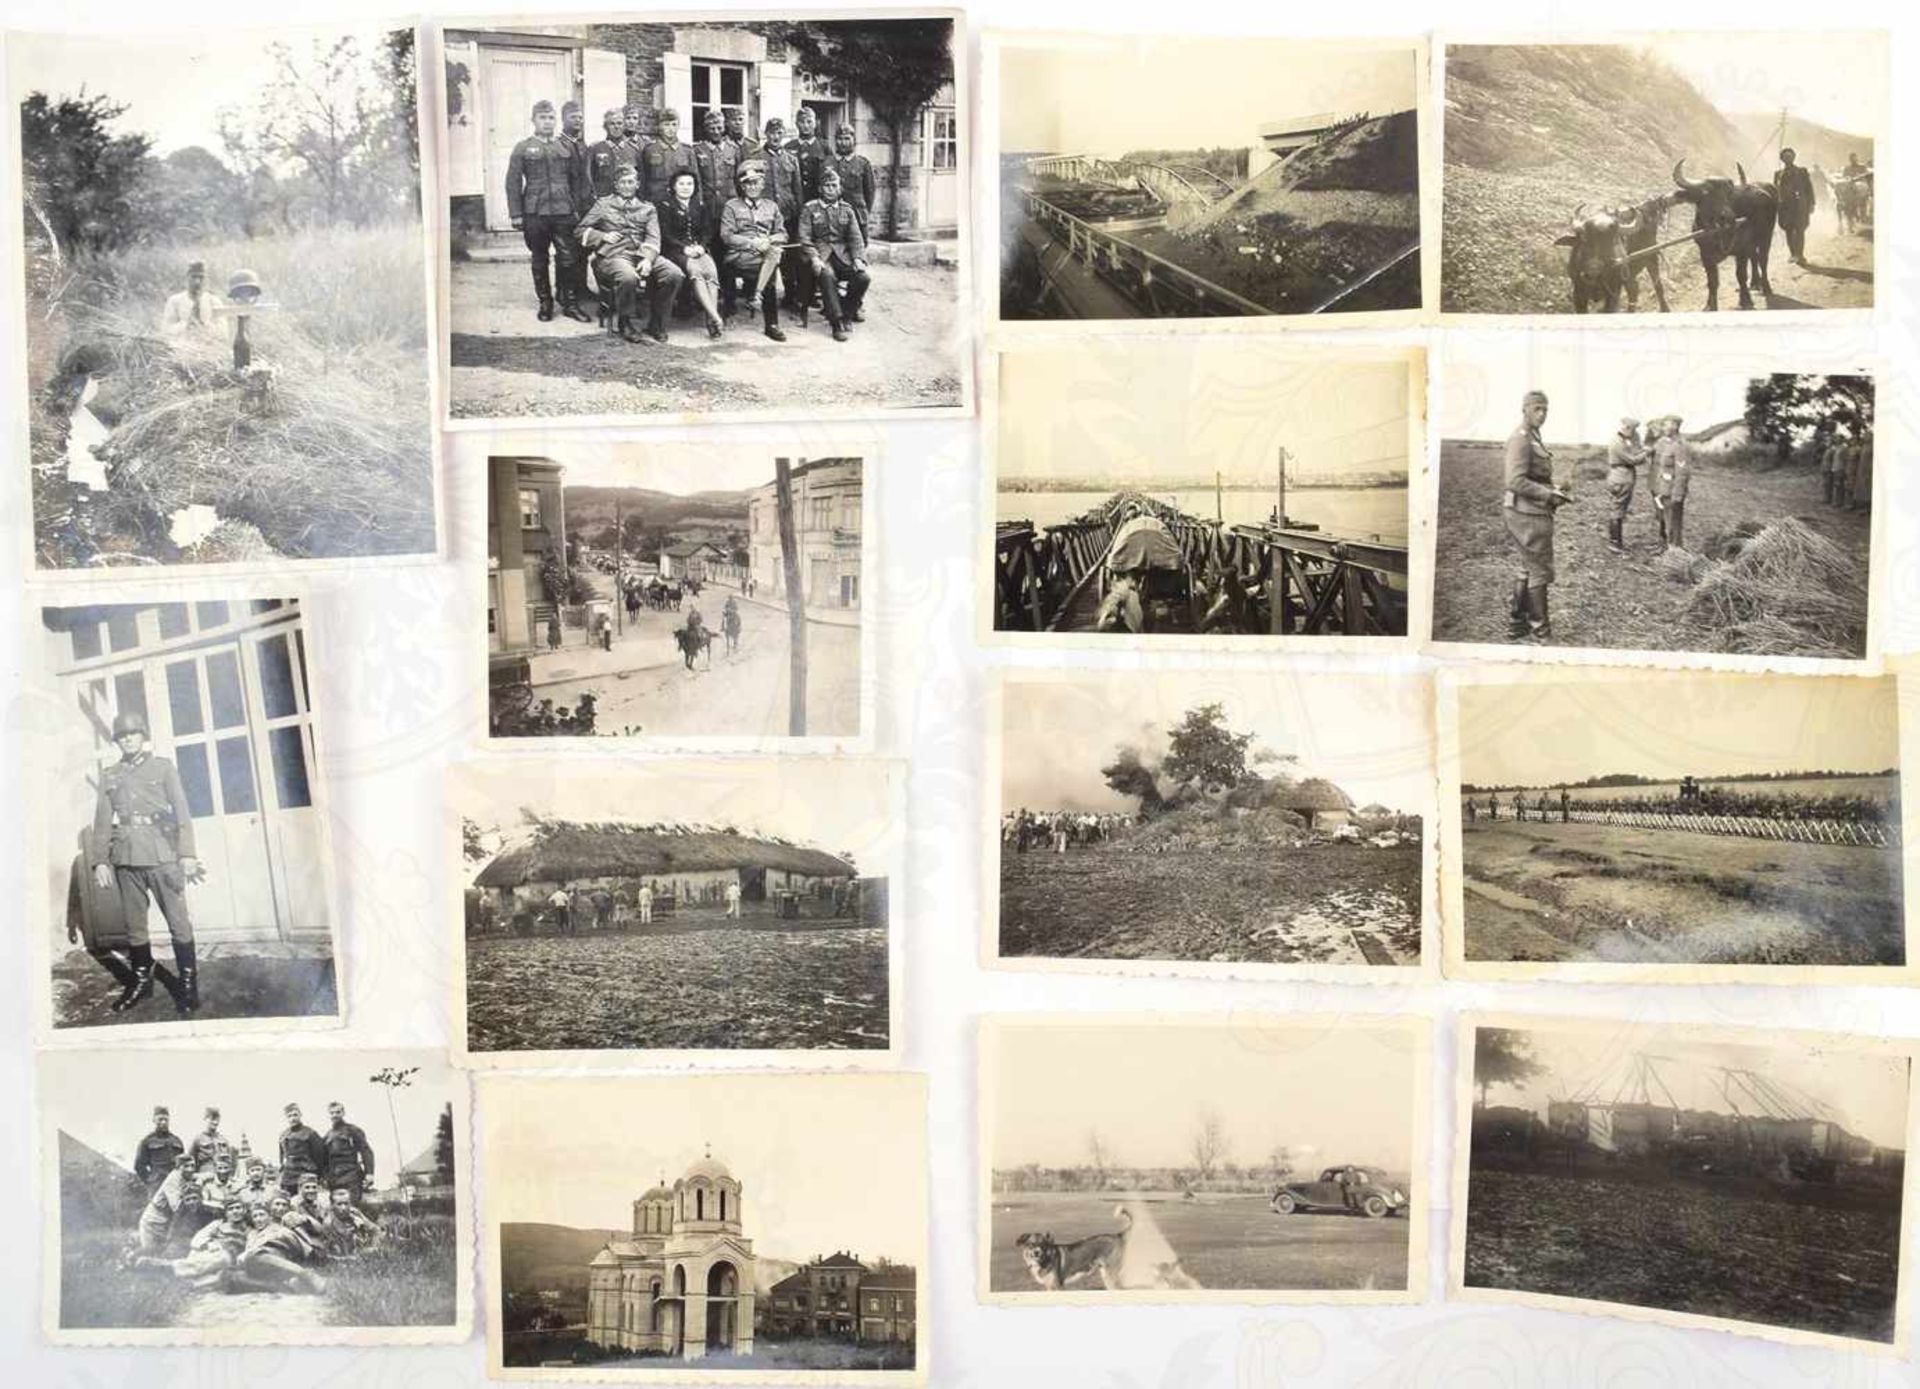 43 FOTOS BALKANFELDZUG, Offiziere, Zerstörungen, Transport d. Bulgarien, bespannte Einheiten,